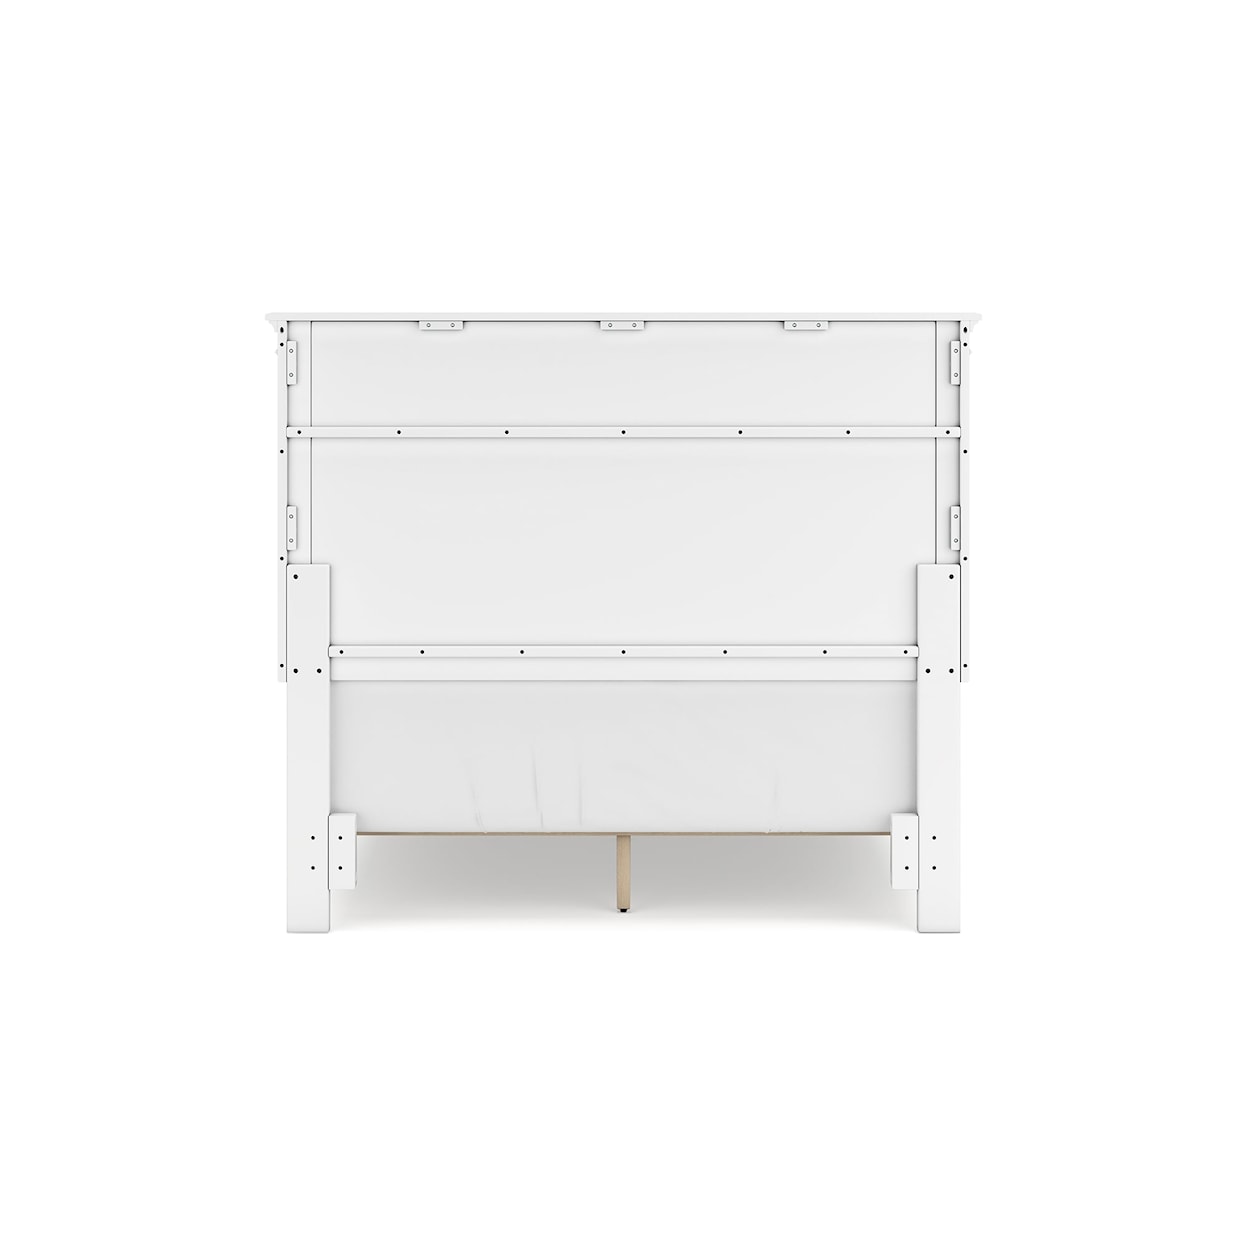 Signature Design Fortman Full Panel Bed